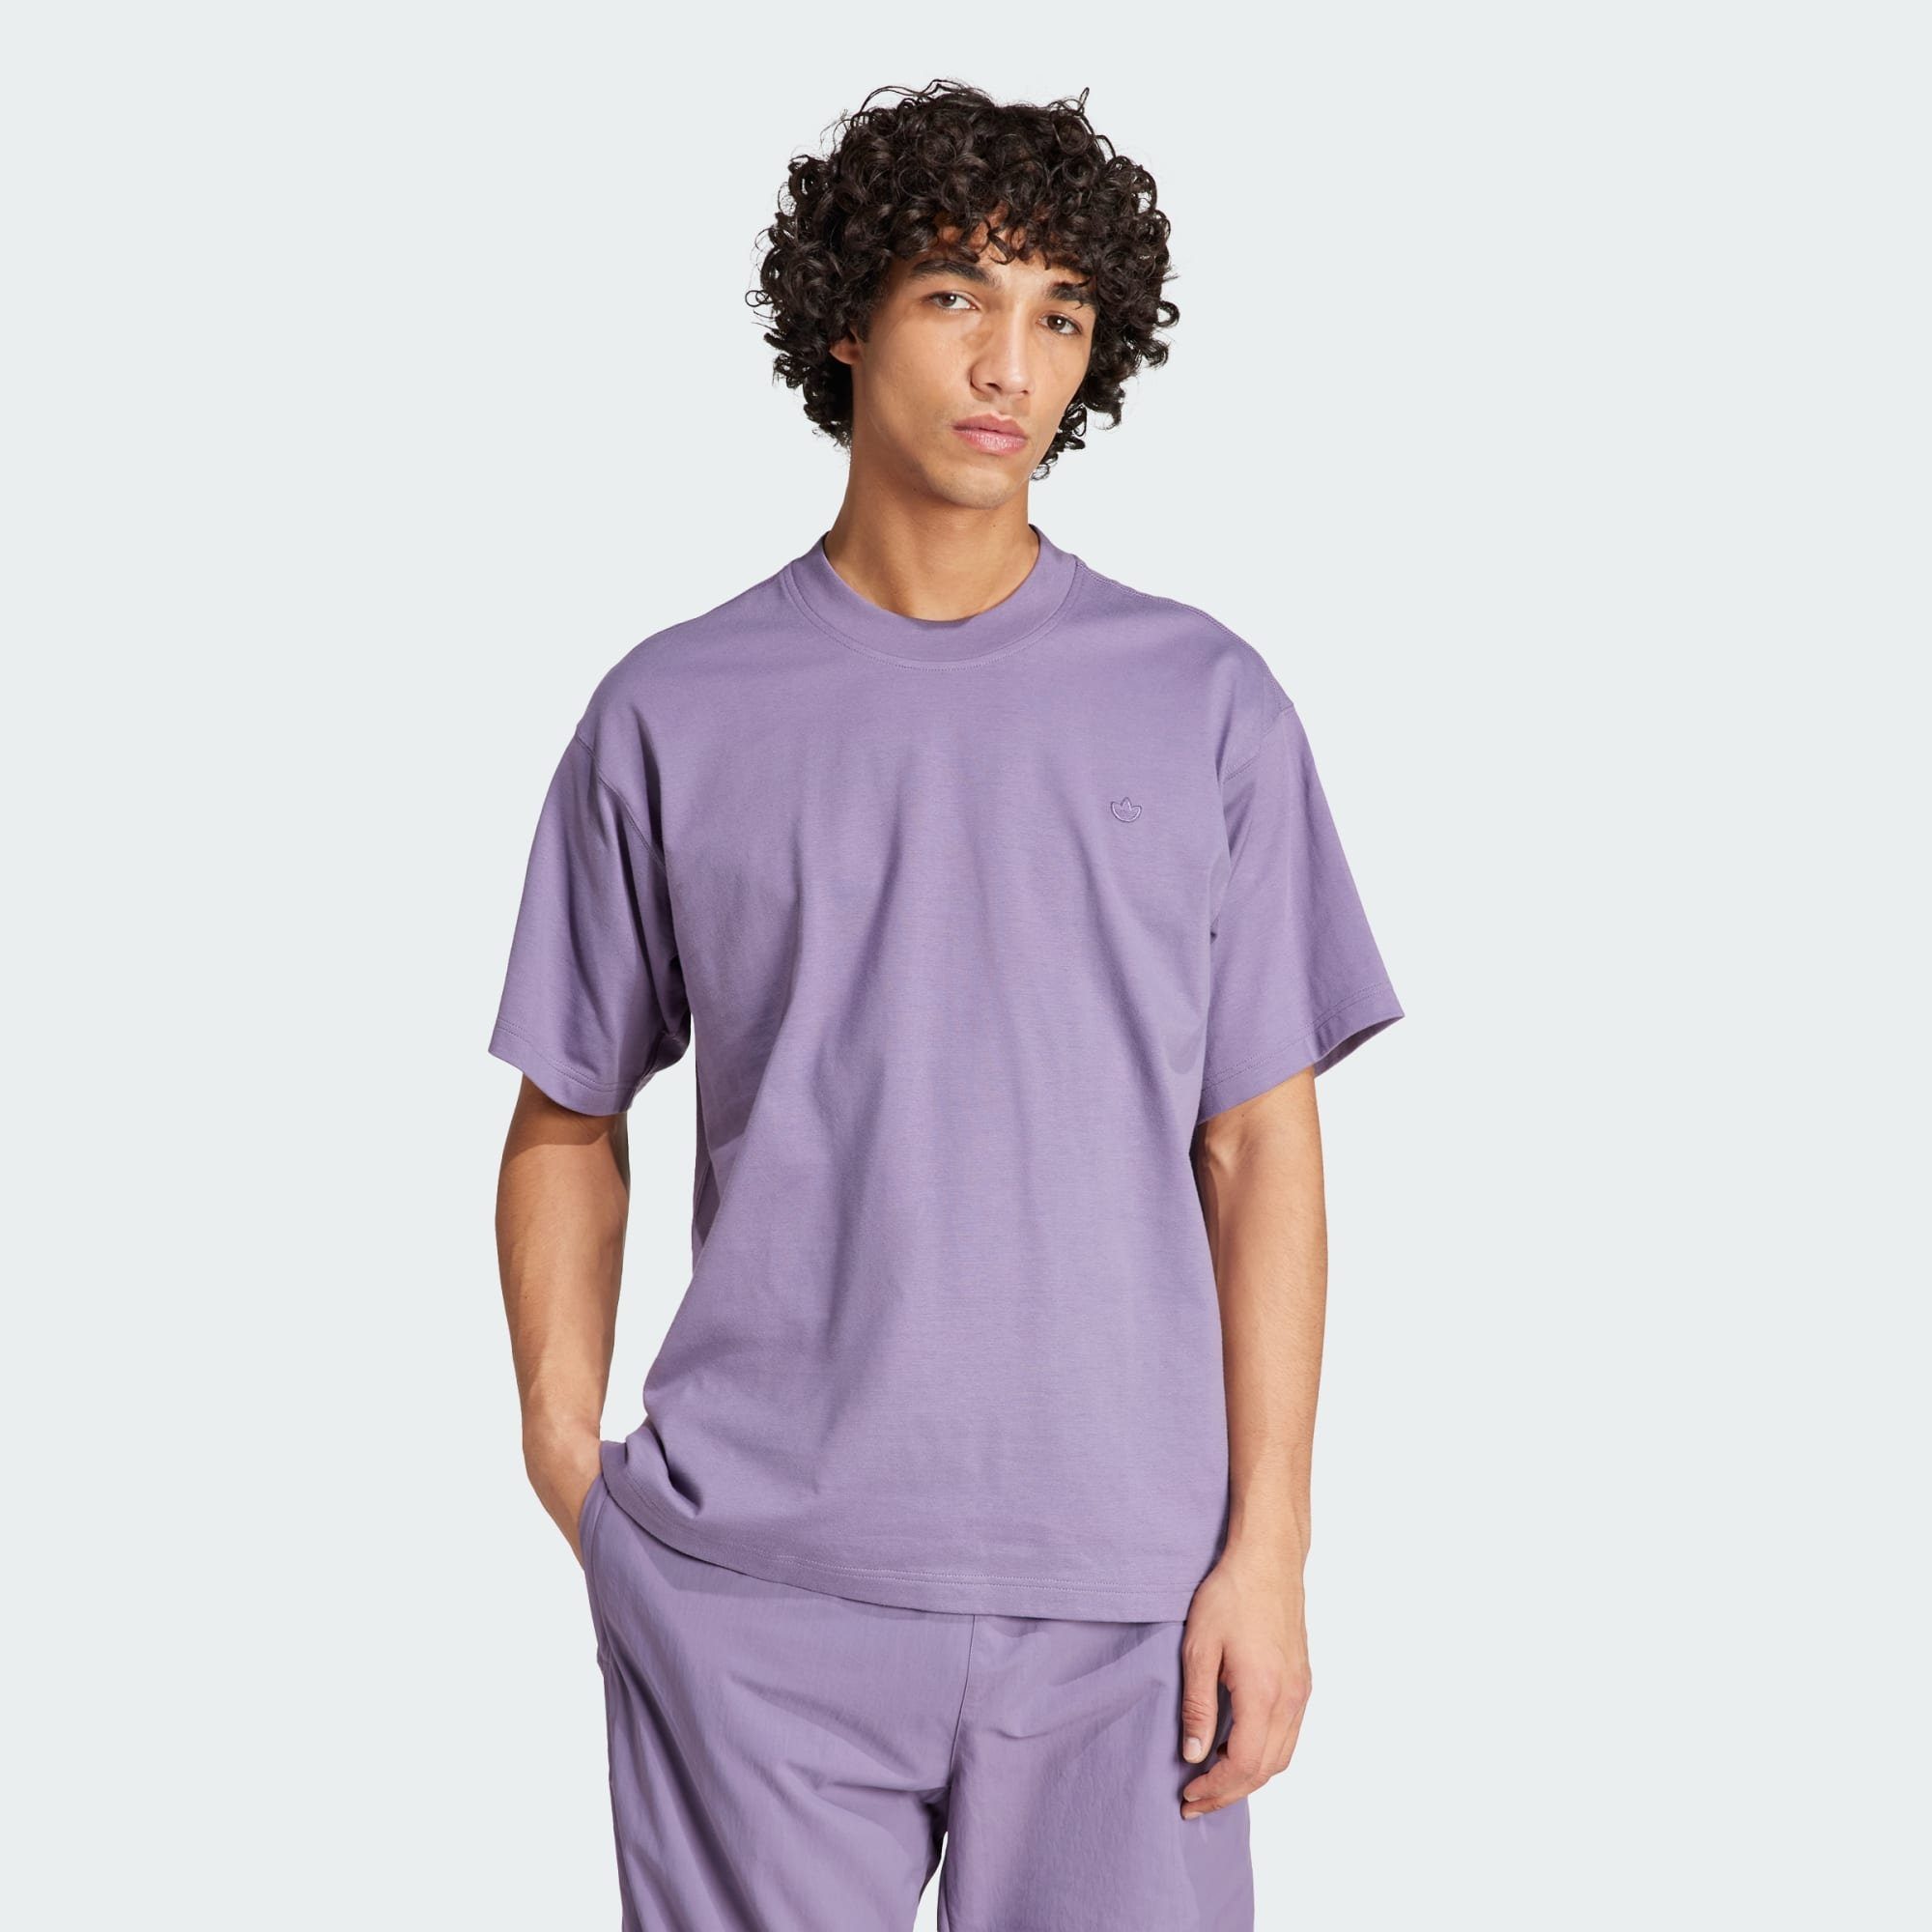 Originals Violet T-Shirt adidas ADICOLOR T-SHIRT Shadow CONTEMPO